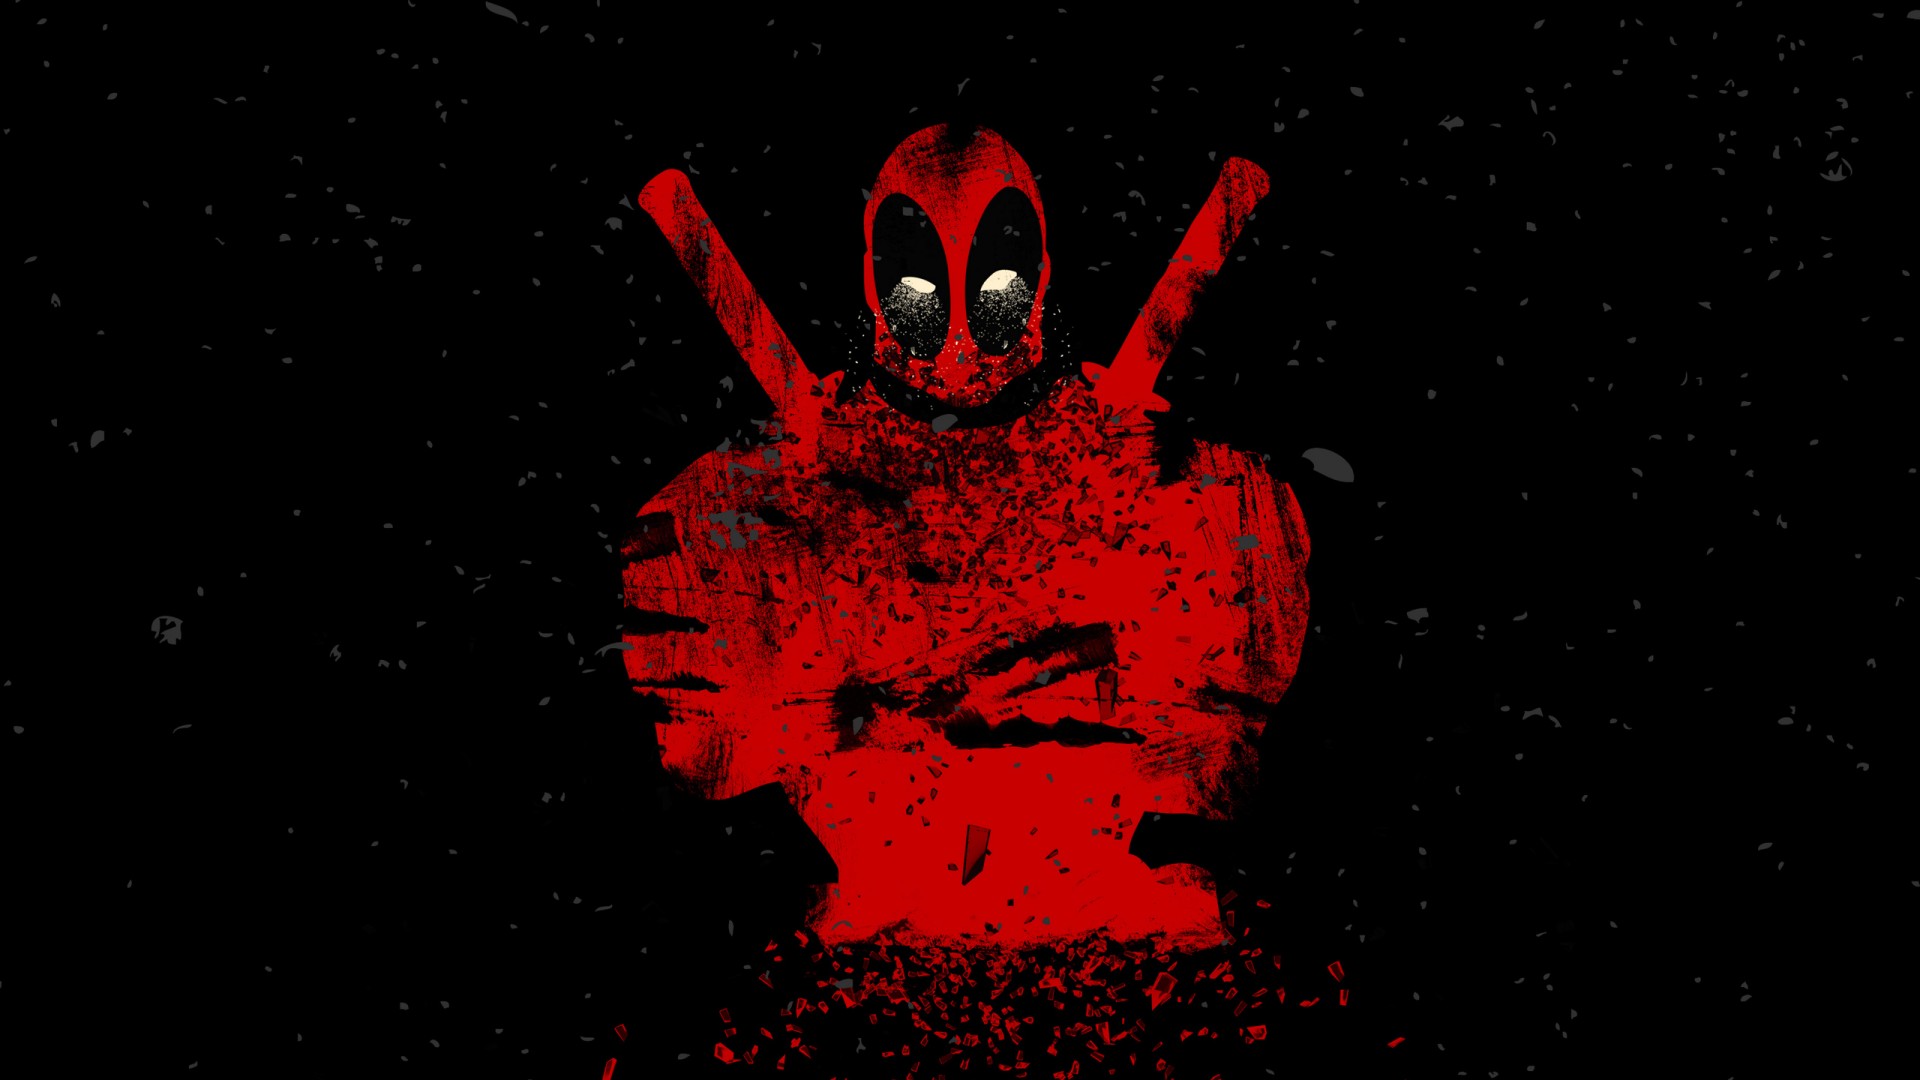 Deadpool Artwork Red And Black Image Background Black Wallpaper & Background Download